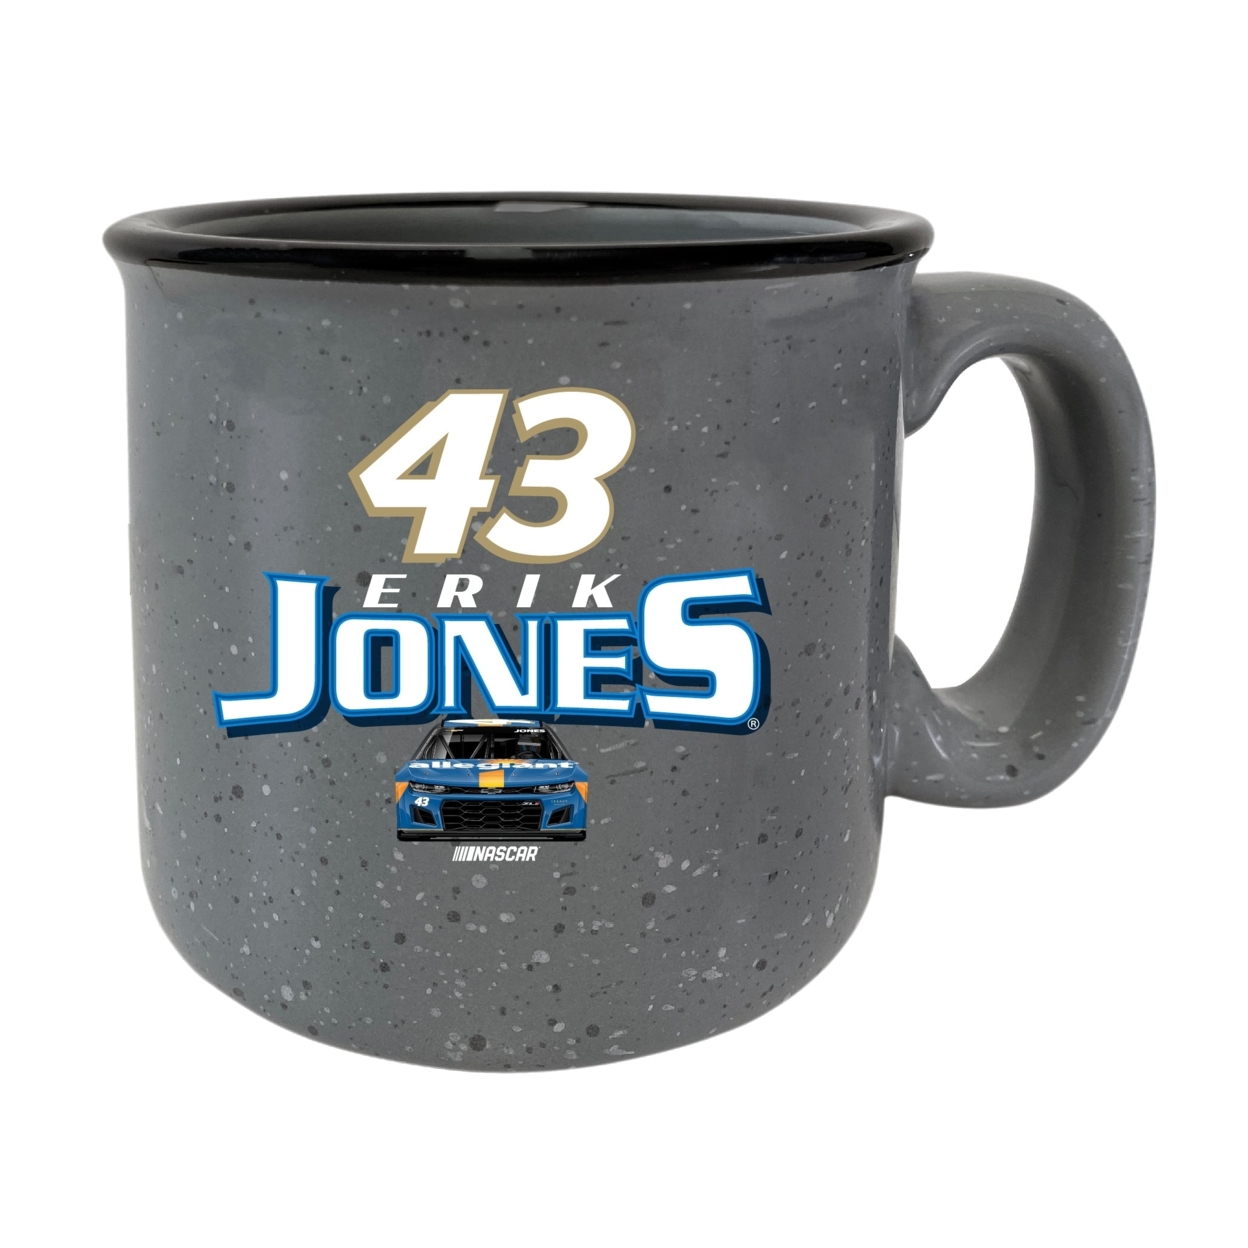 #43 Erik Jones Officially Licensed Ceramic Camper Mug 16oz - Blue